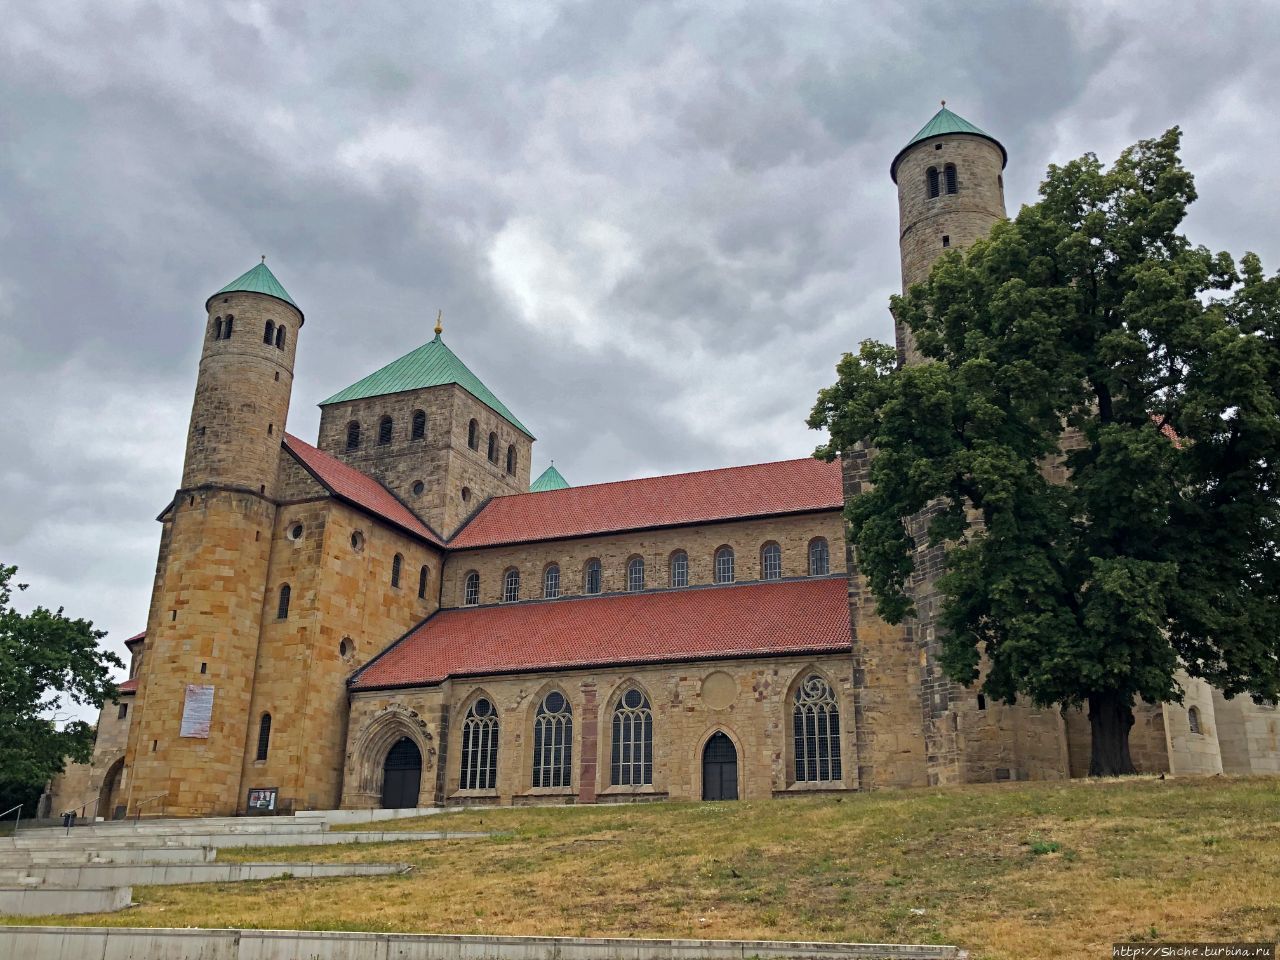 Церковь Св. Михаила в Хильдесхайме Хильдесхайм, Германия